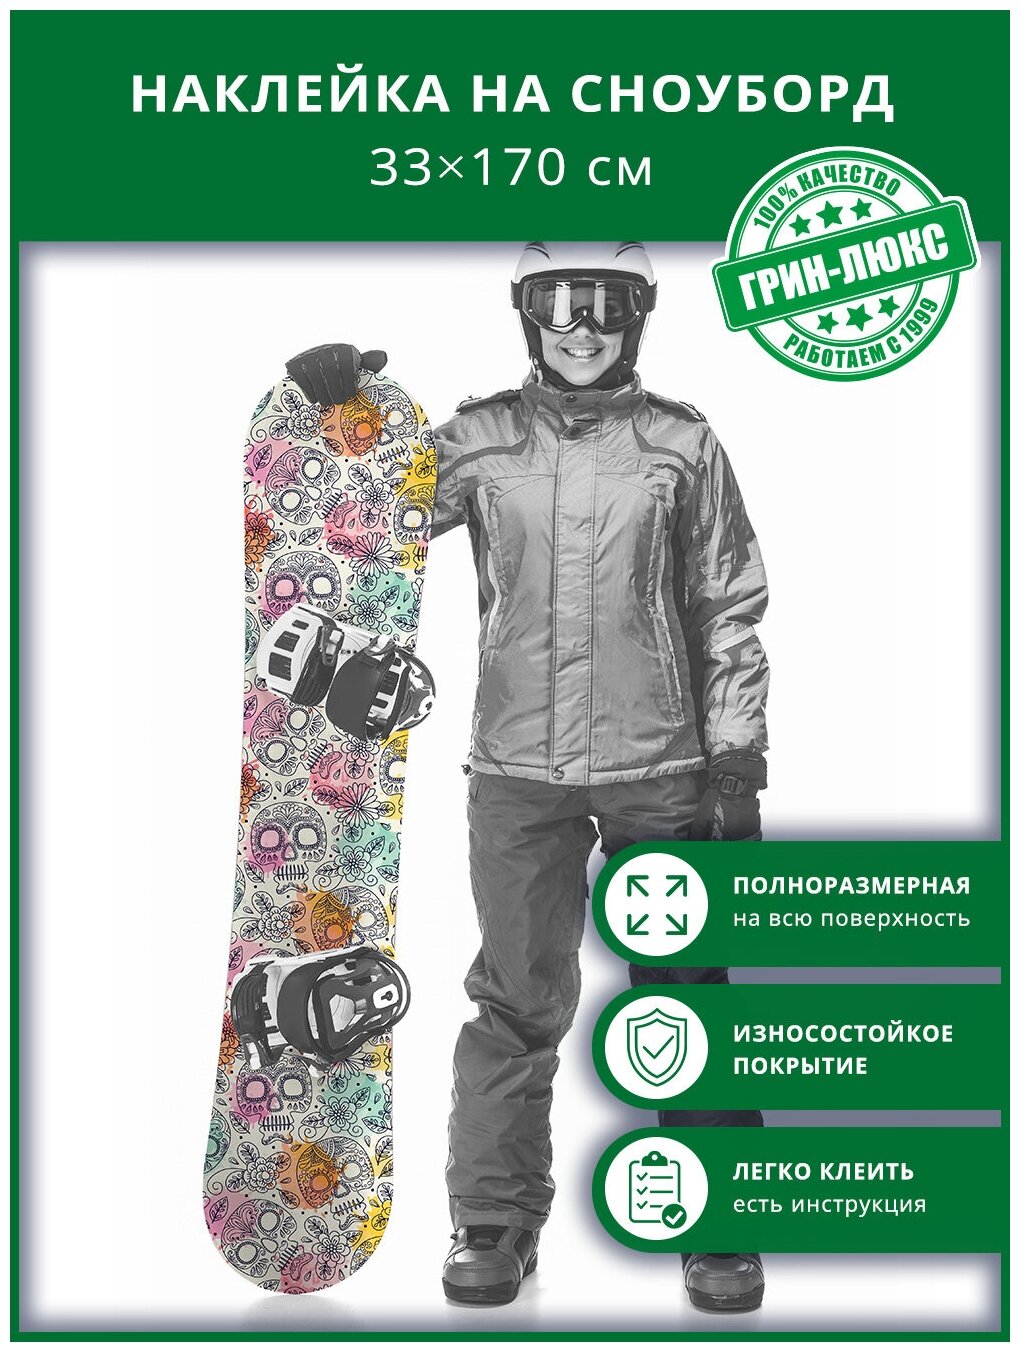 Наклейка на сноуборд с защитным глянцевым покрытием 33х170 см "Весёлые черепки"